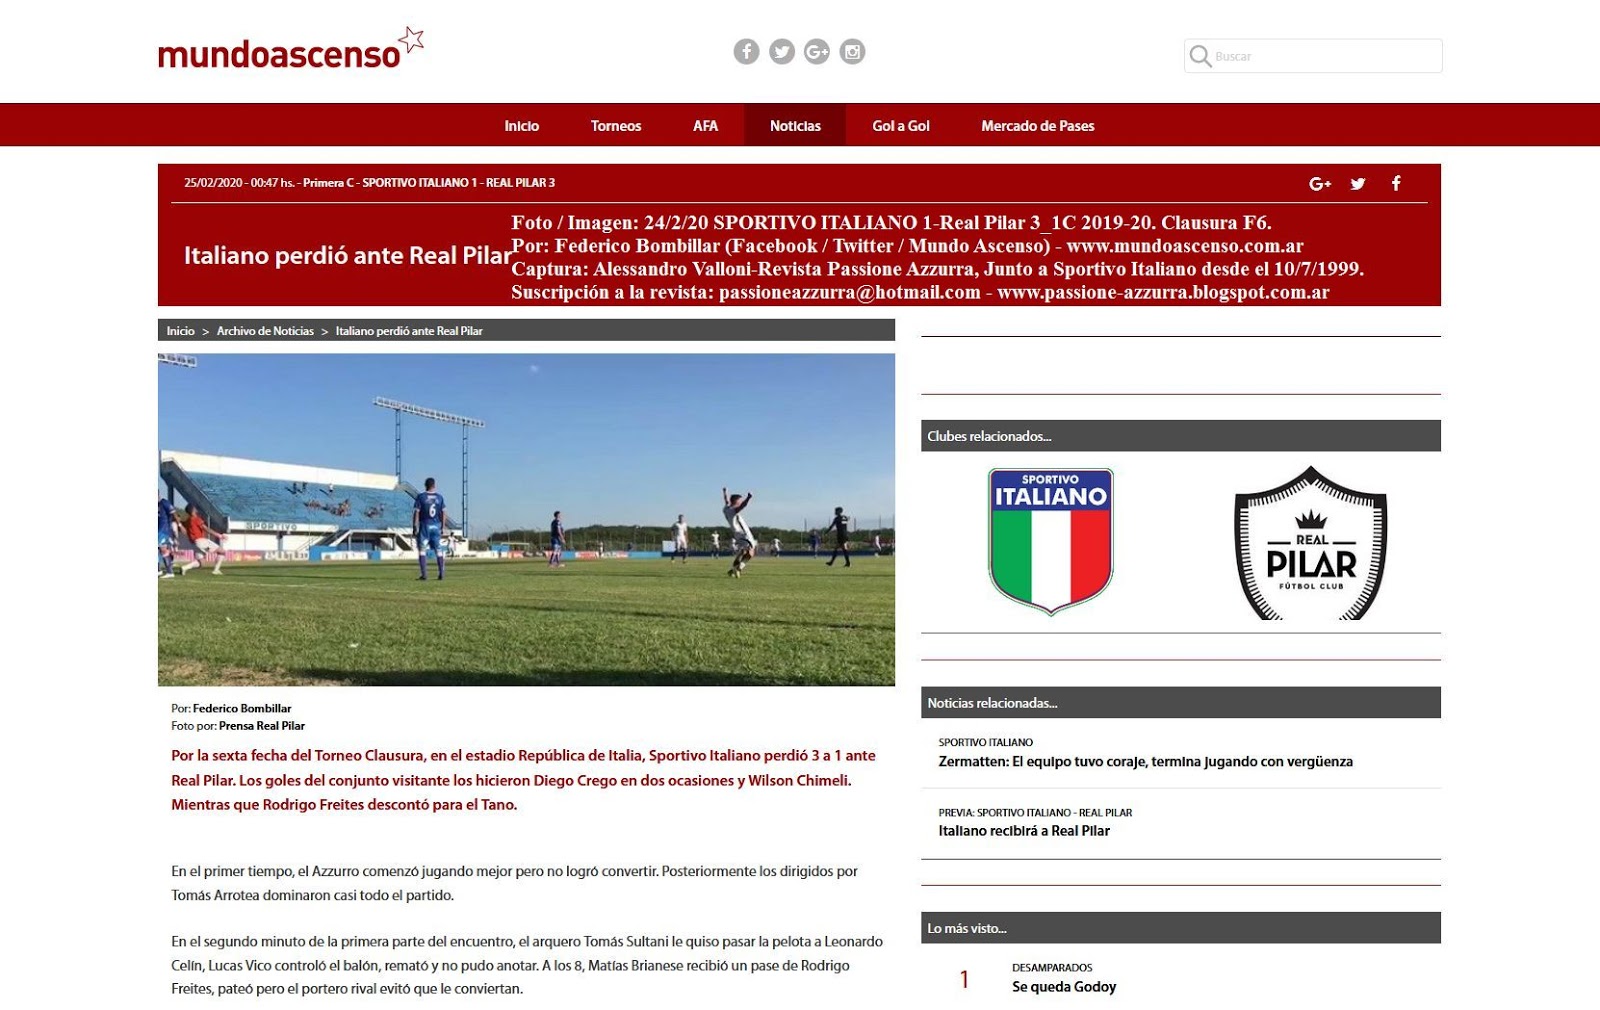 Revista Passione Azzurra-Junto al Sportivo Italiano desde el 10/7/1999